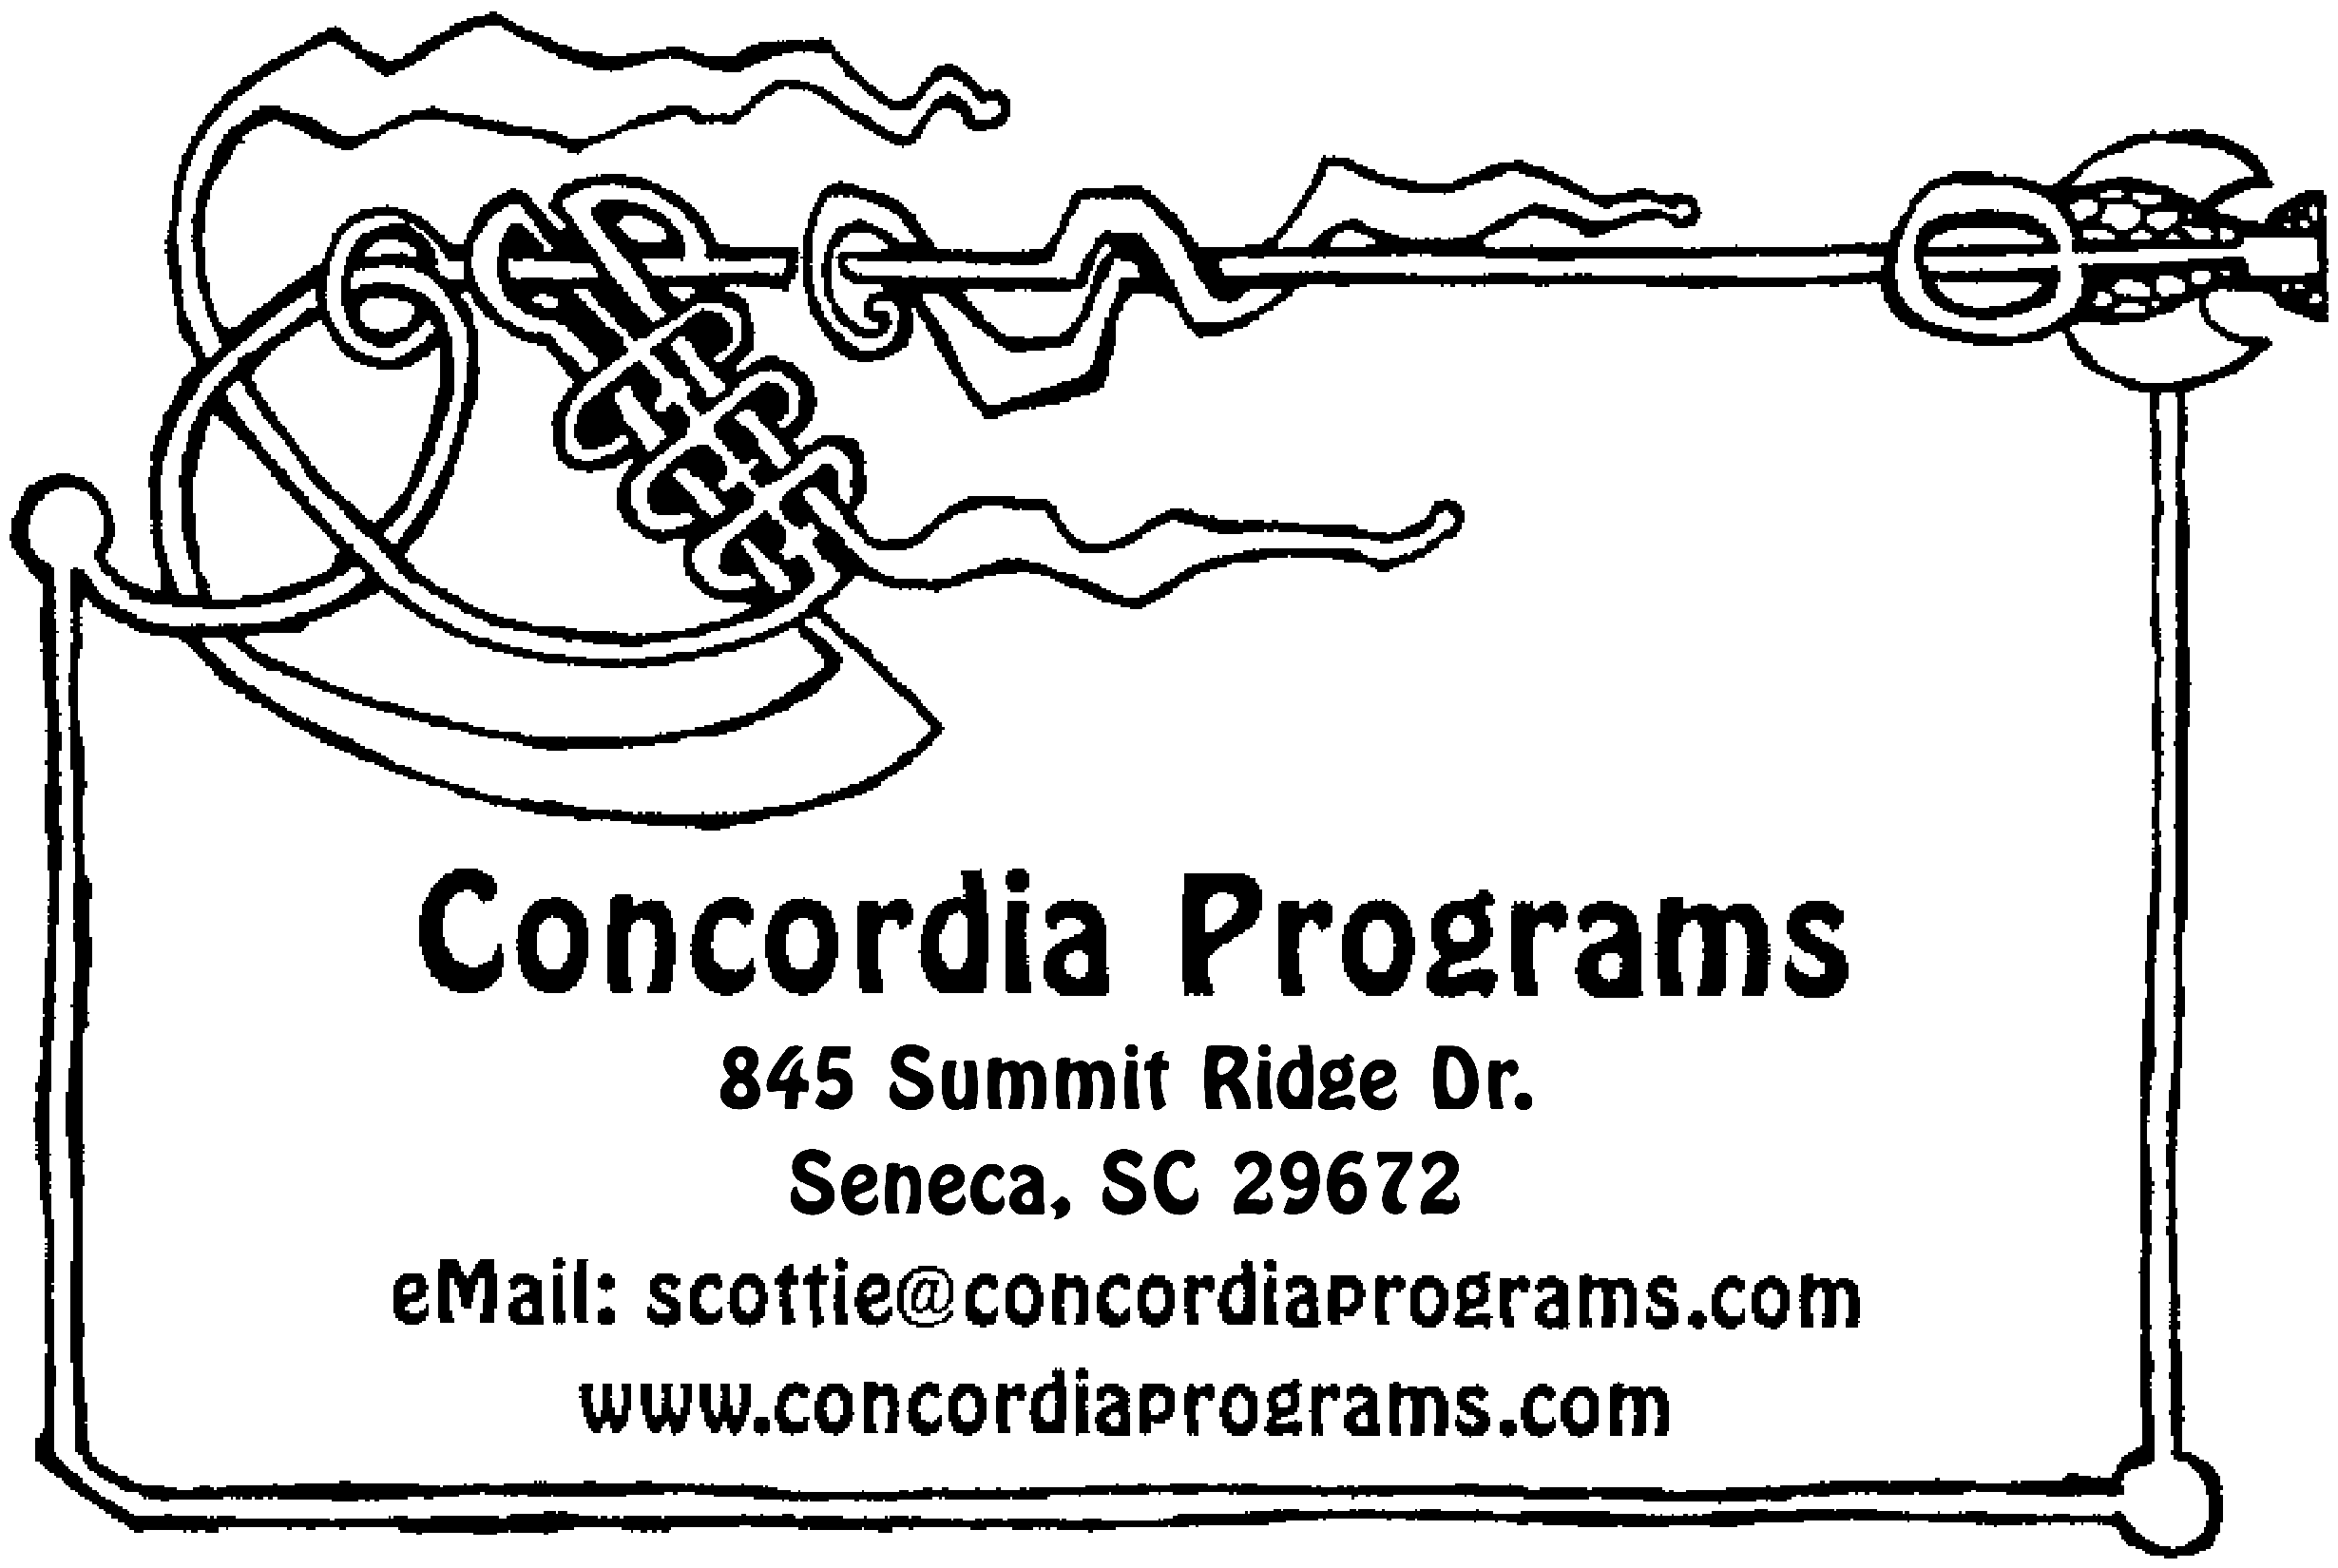 Concordia Programs